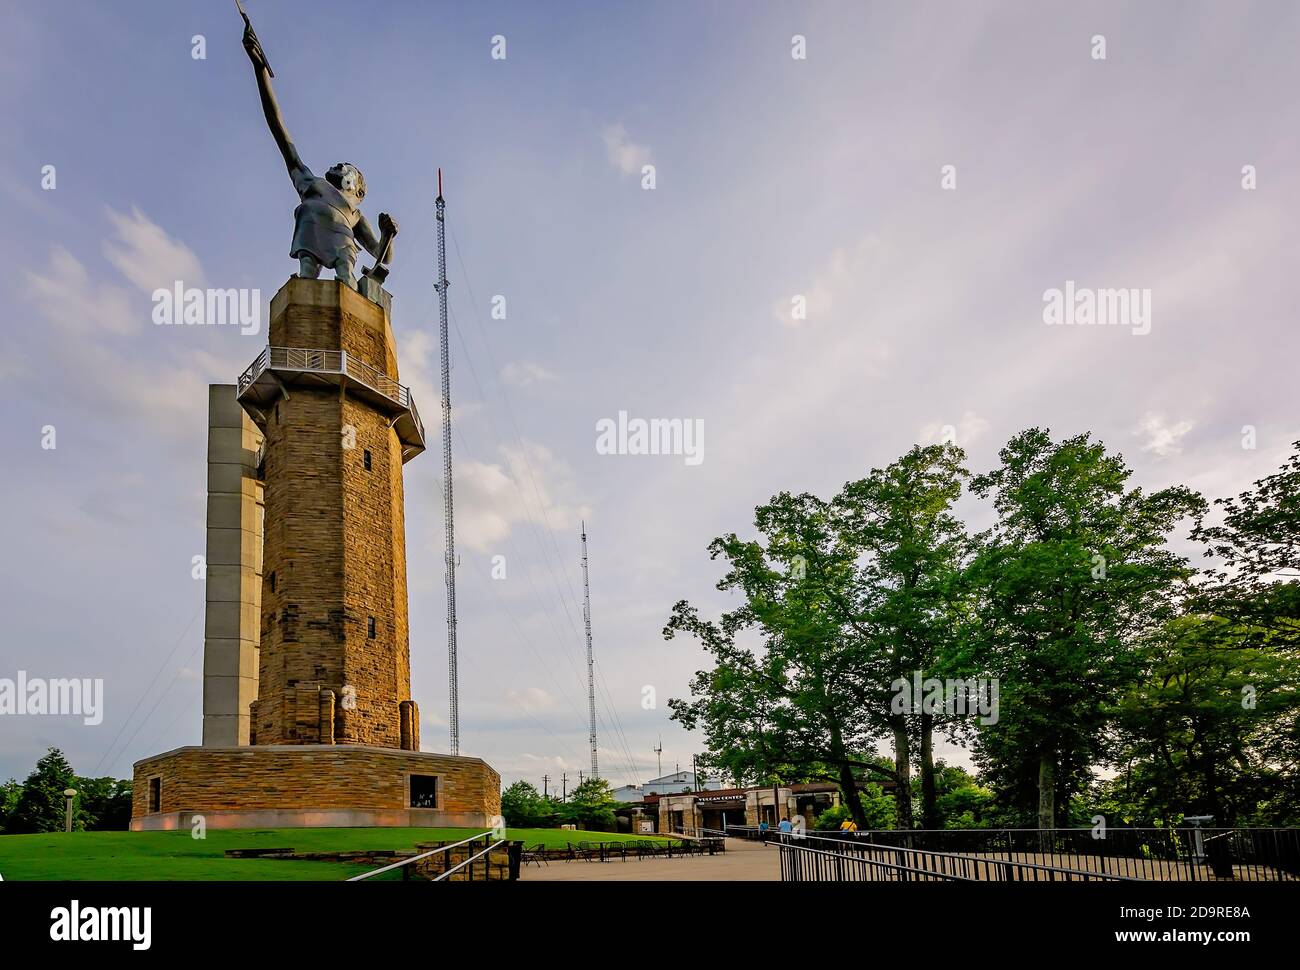 La statua di Vulcan è raffigurata nel Vulcan Park, 19 luglio 2015, a Birmingham, Alabama. La statua in ferro raffigura il Dio romano del fuoco e della fucina, Vulcan. Foto Stock